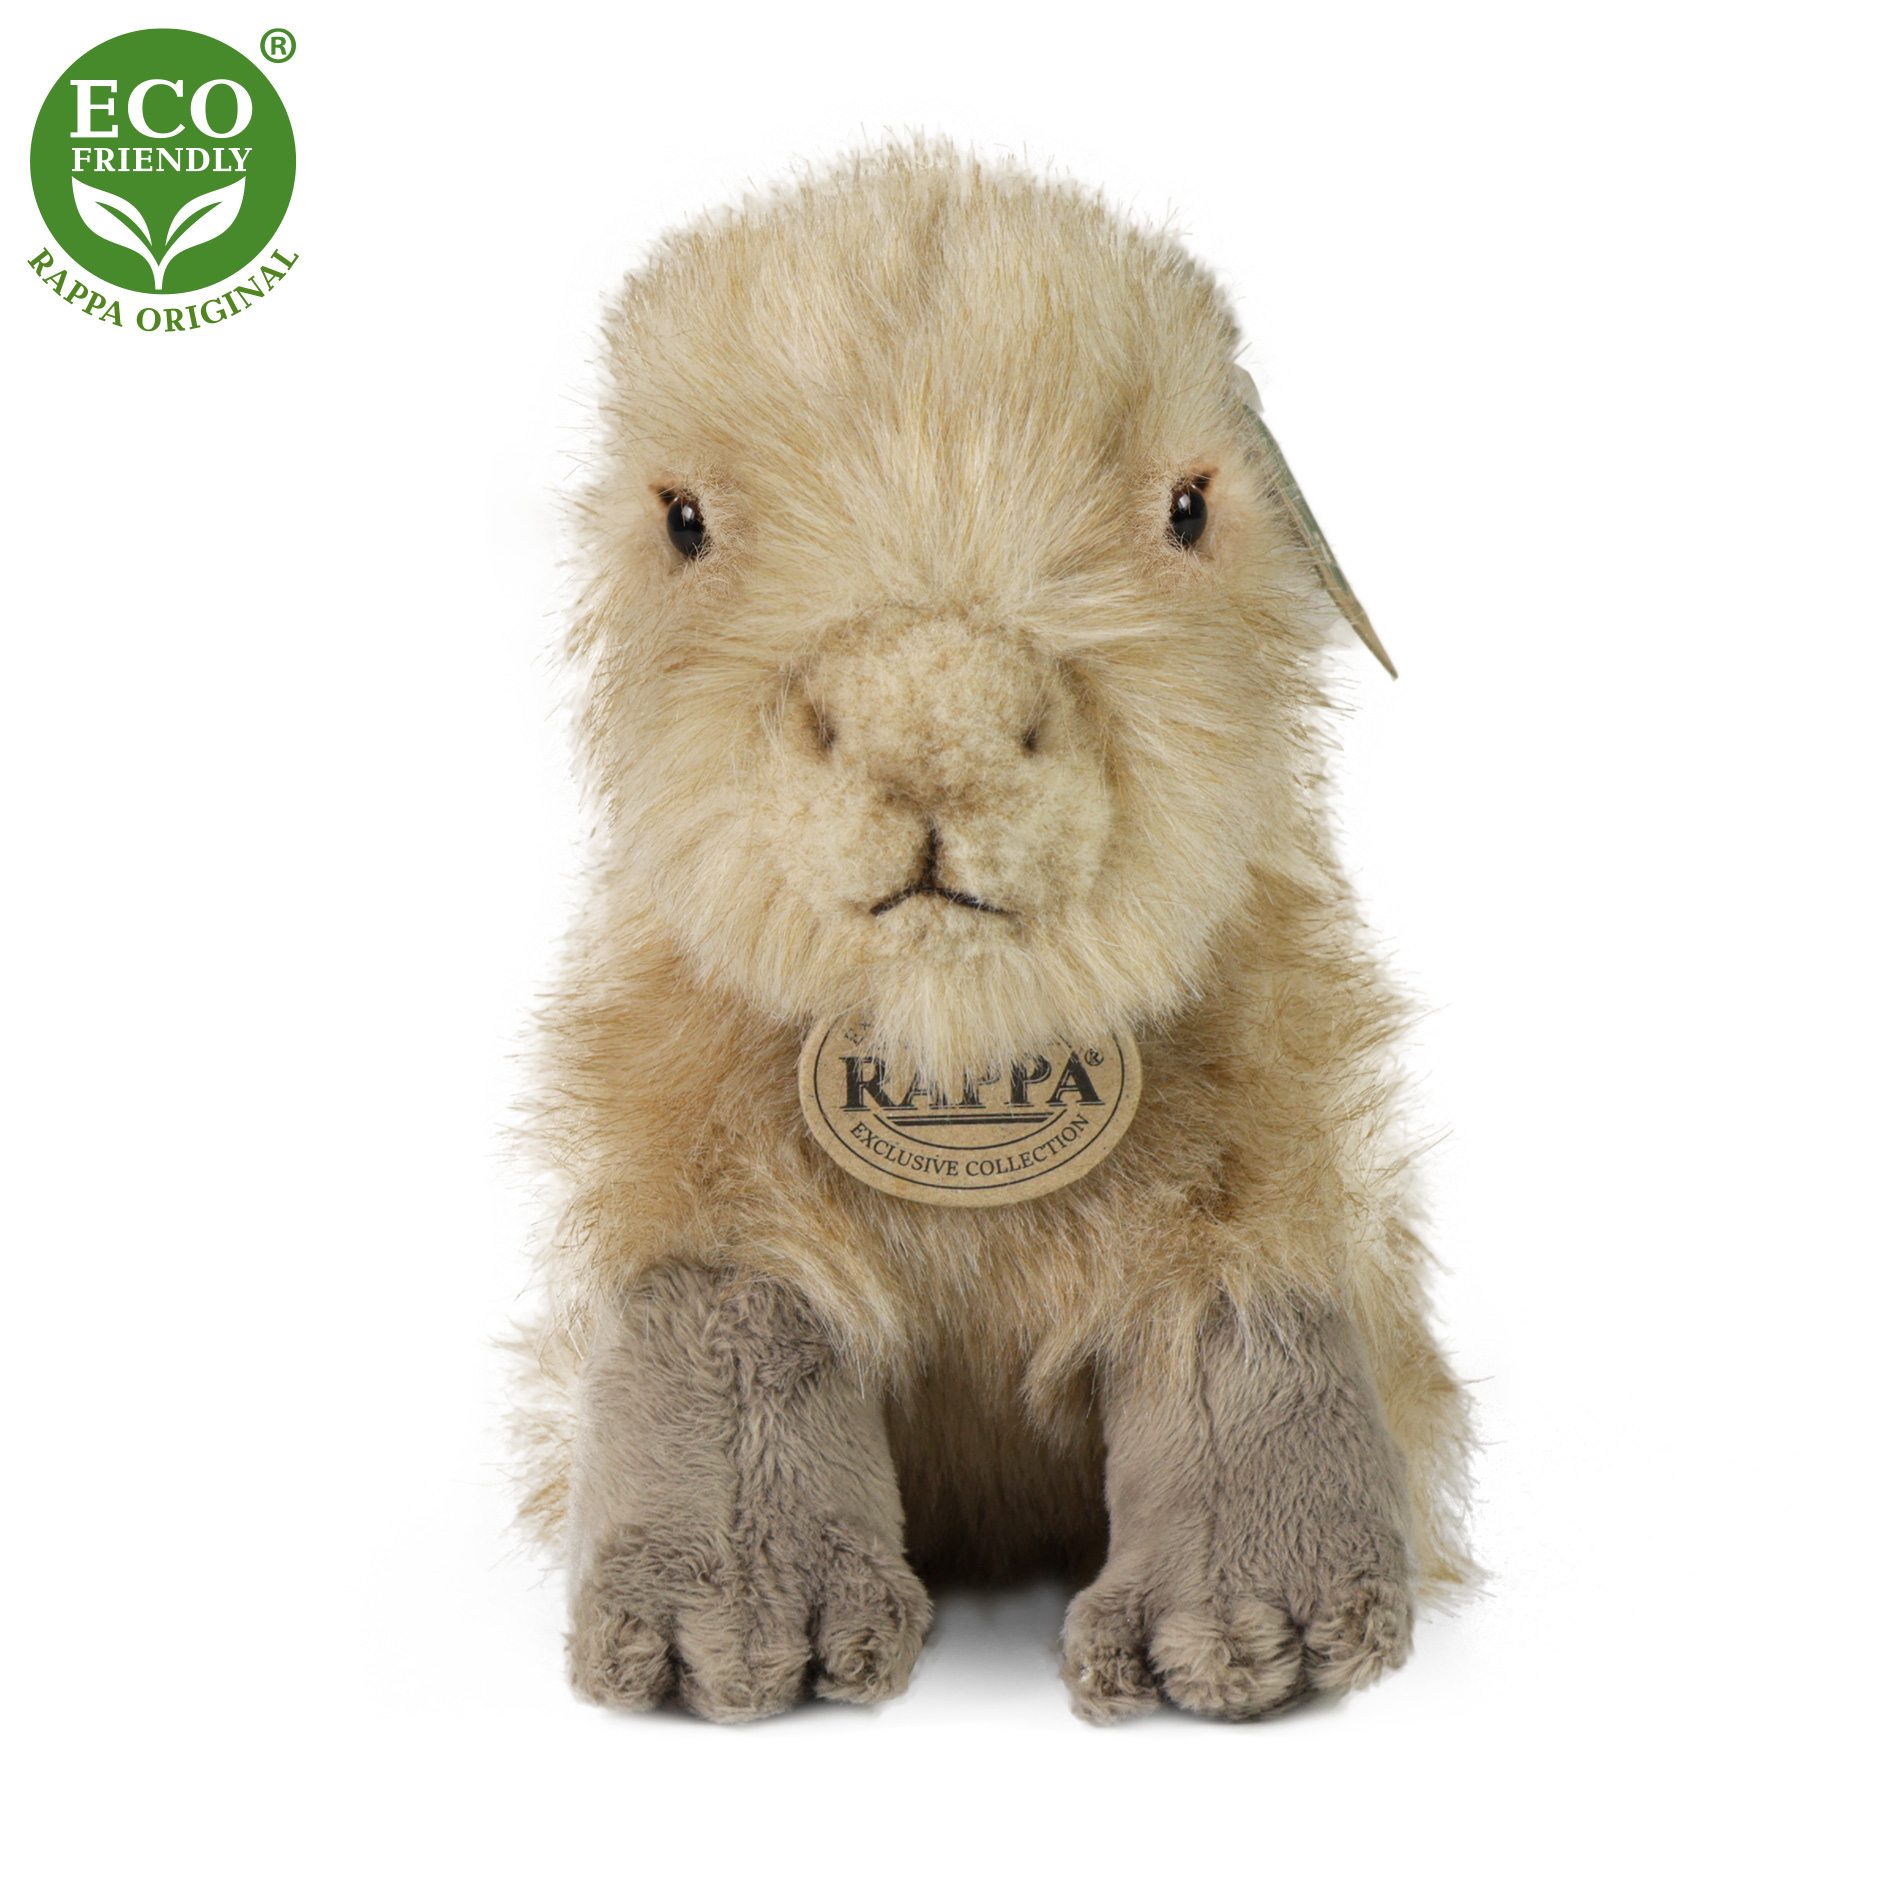 Rappa Eco-Friendly - Plyšová kapybara 18 cm